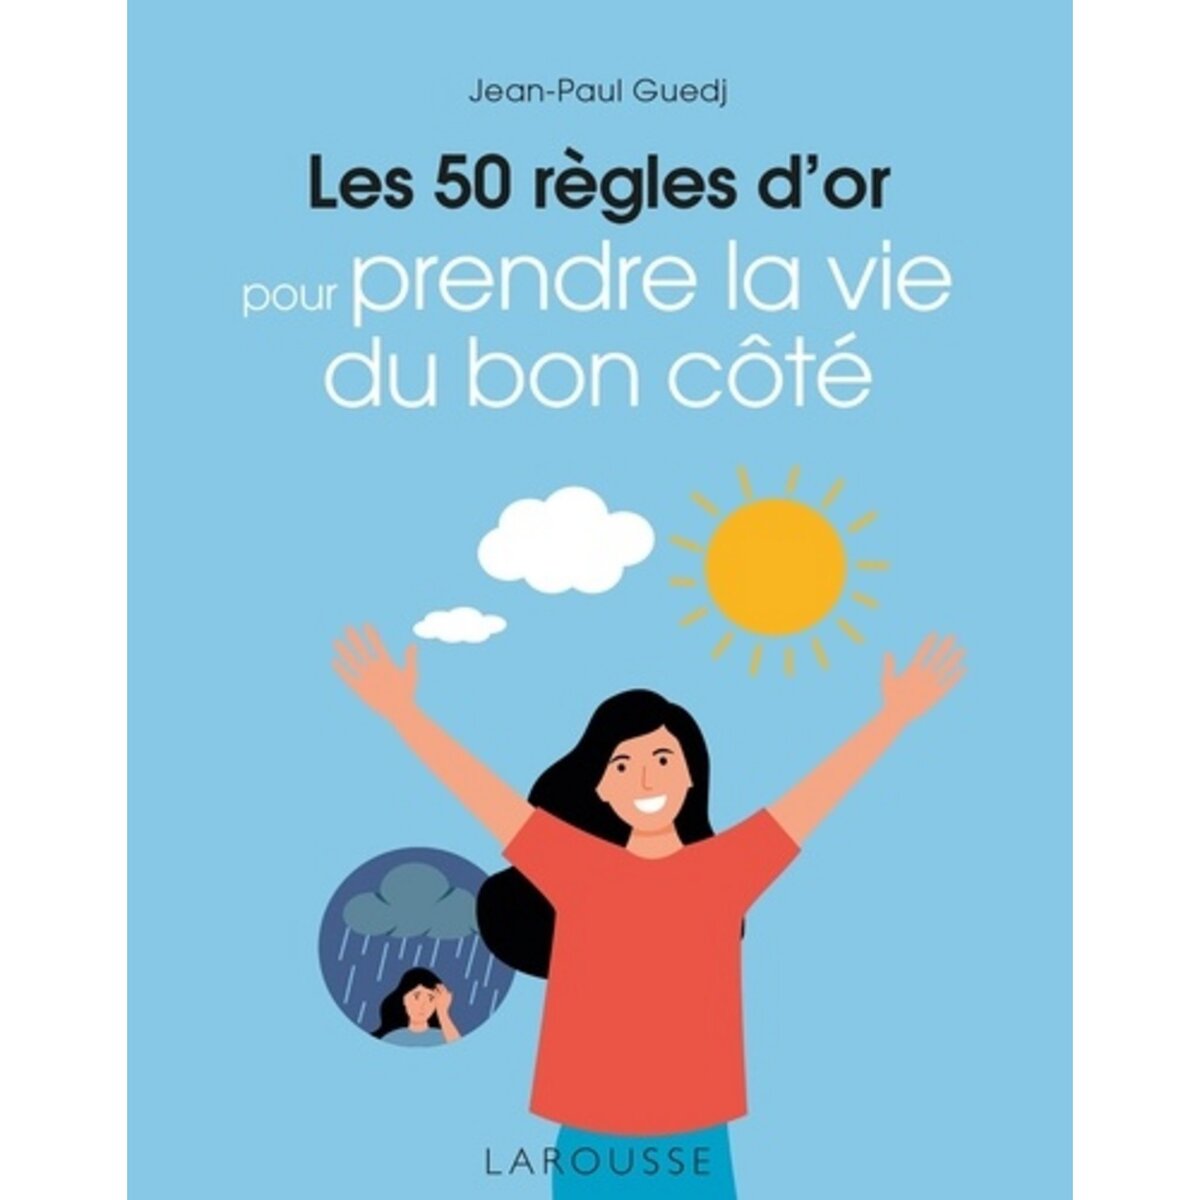  LES 50 REGLES D'OR POUR PRENDRE LA VIE DU BON COTE, Guedj Jean-Paul